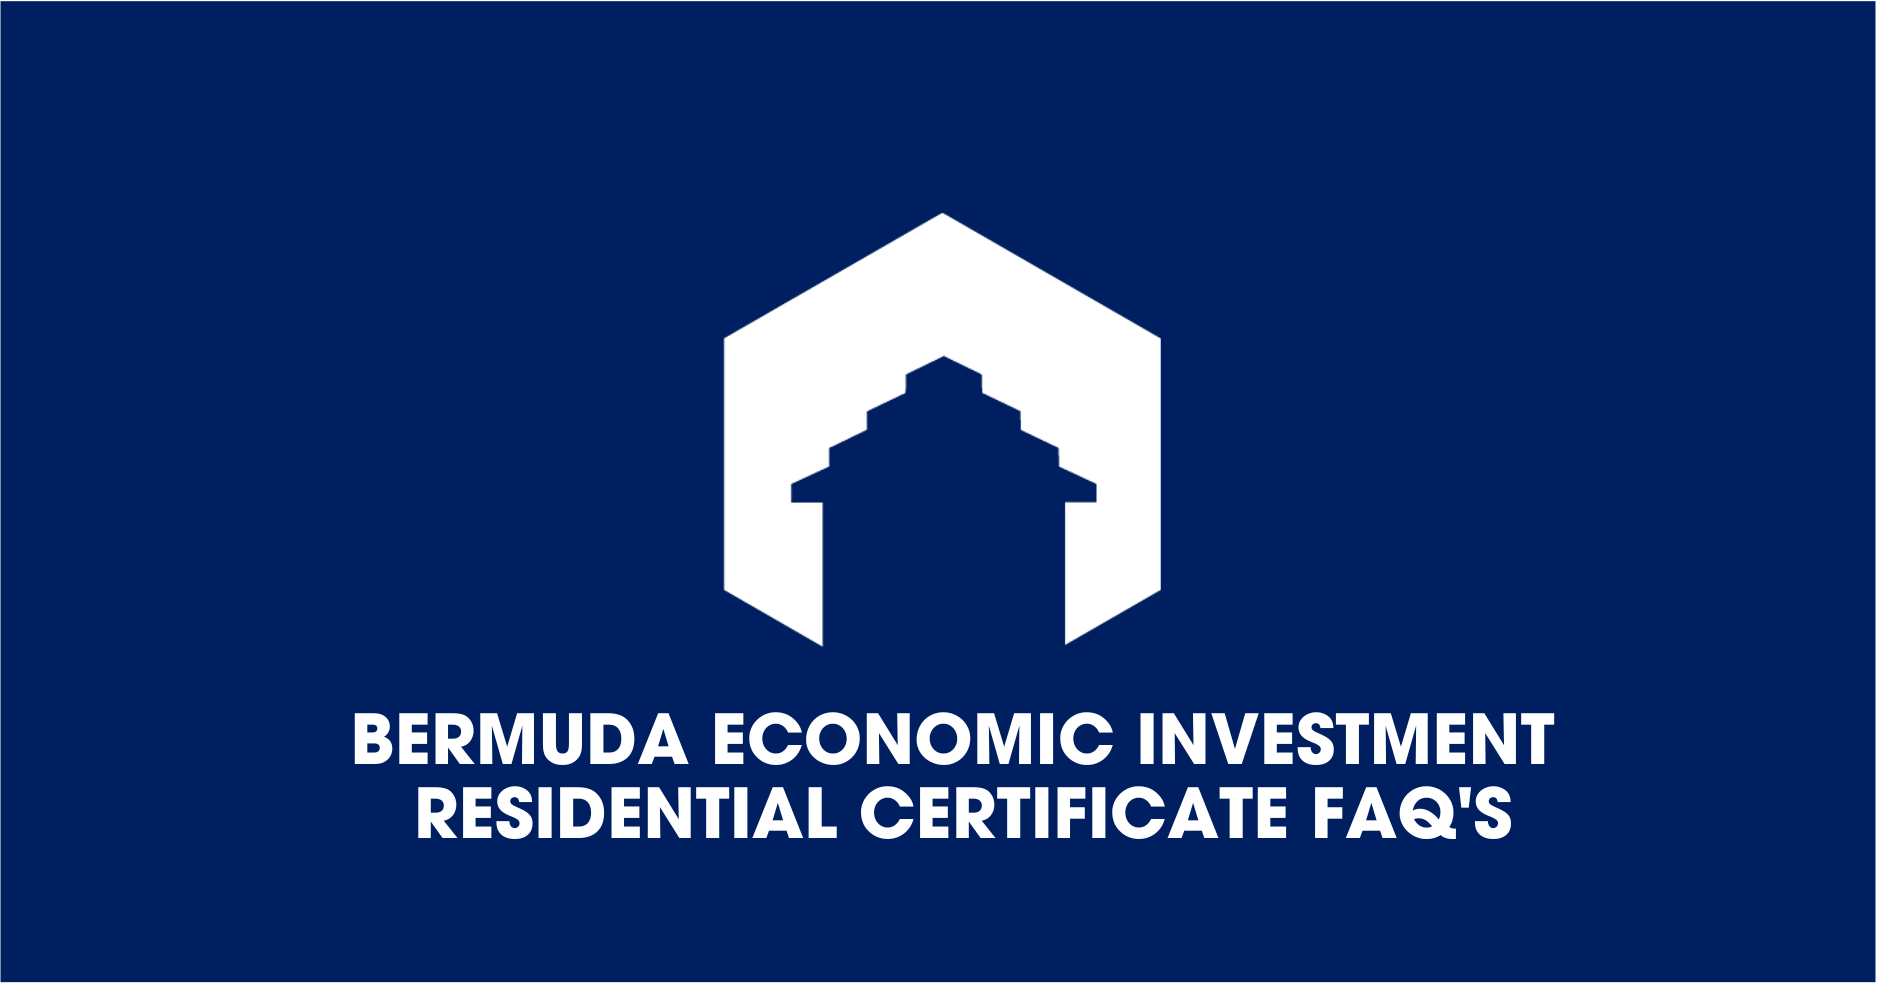 Bermuda Economic Investment Residential Certificate FAQ’s